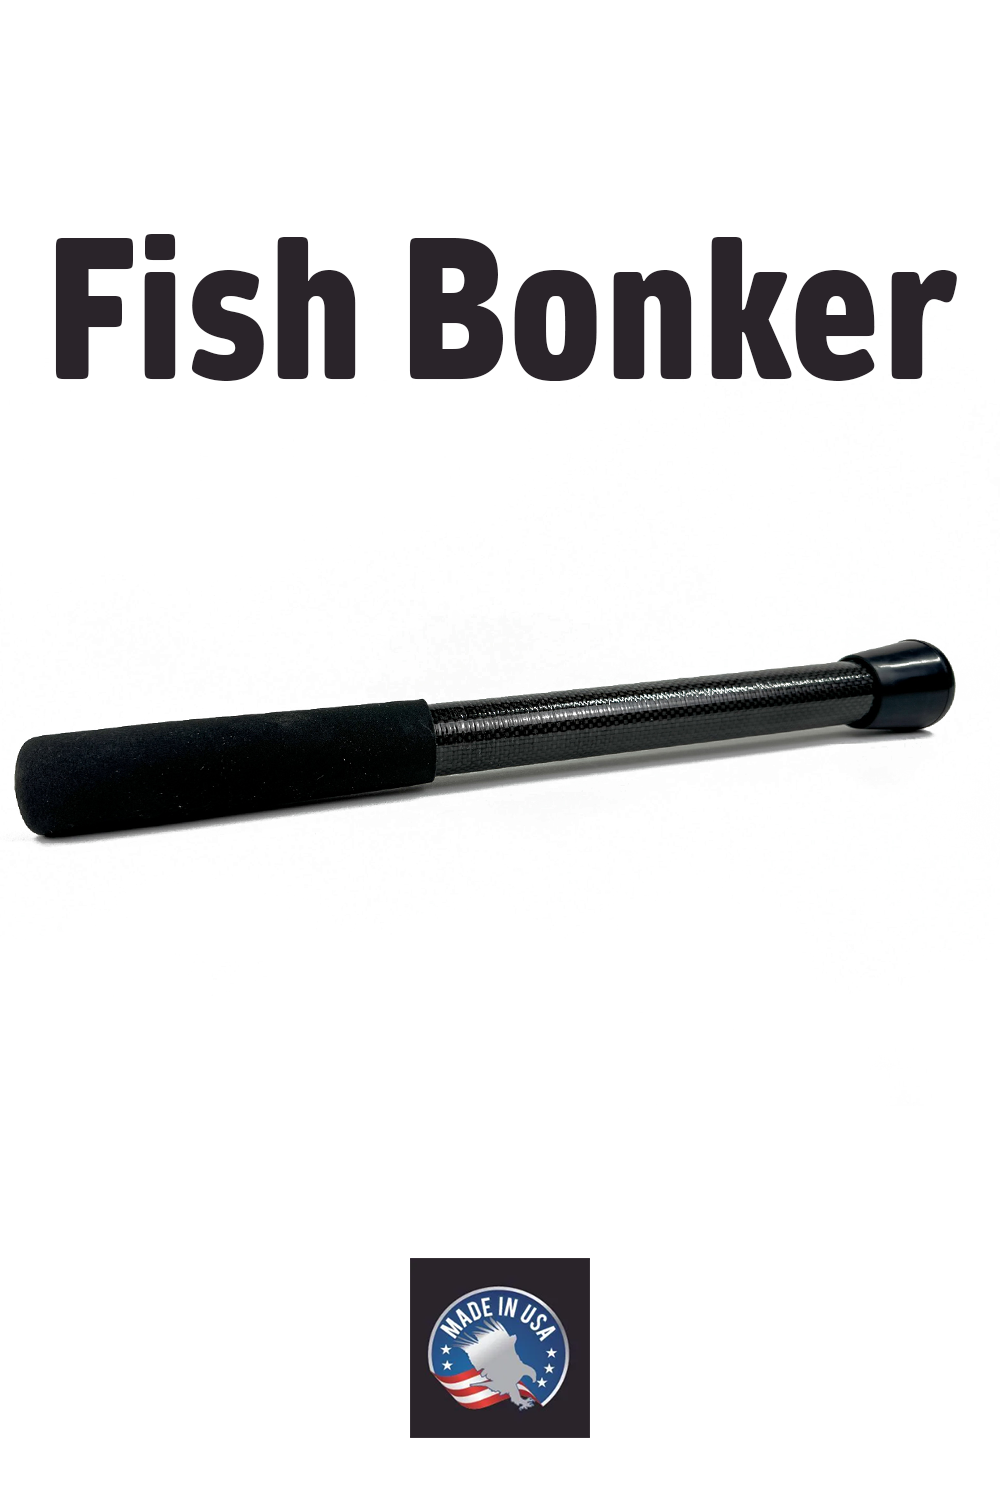 Fish Bonker